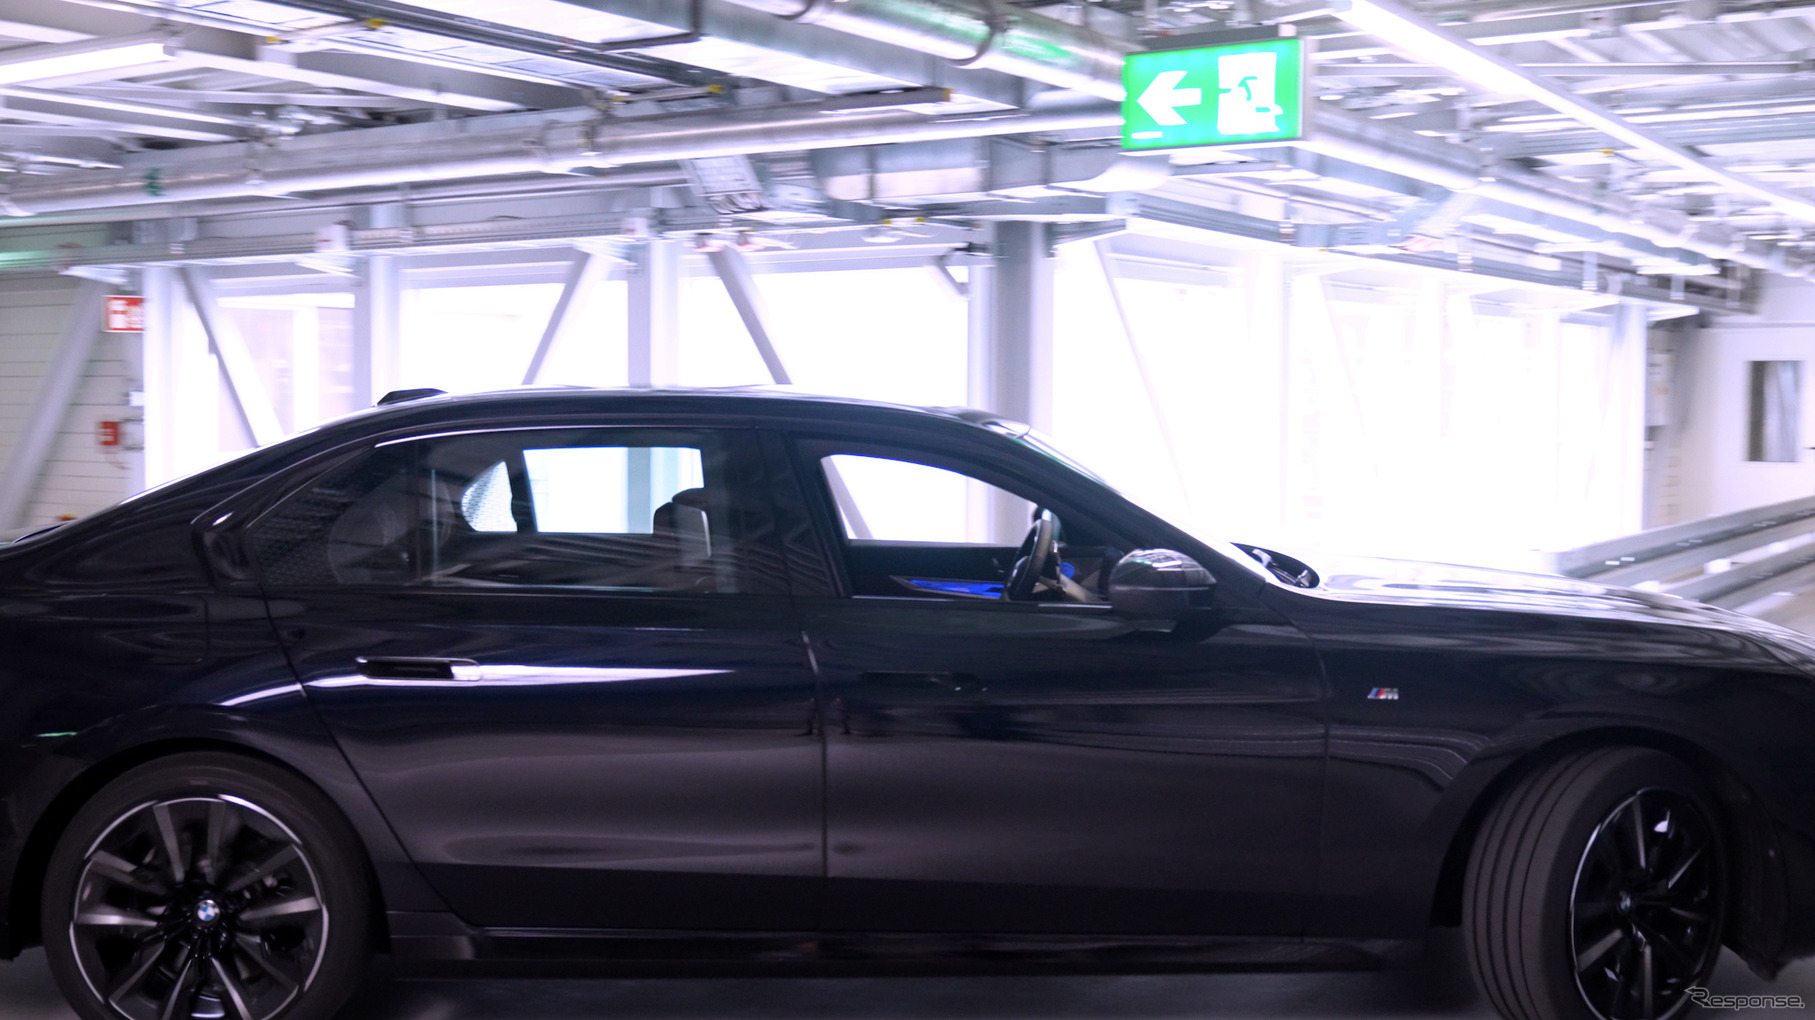 BMWディンゴルフィング工場構内での自動運転